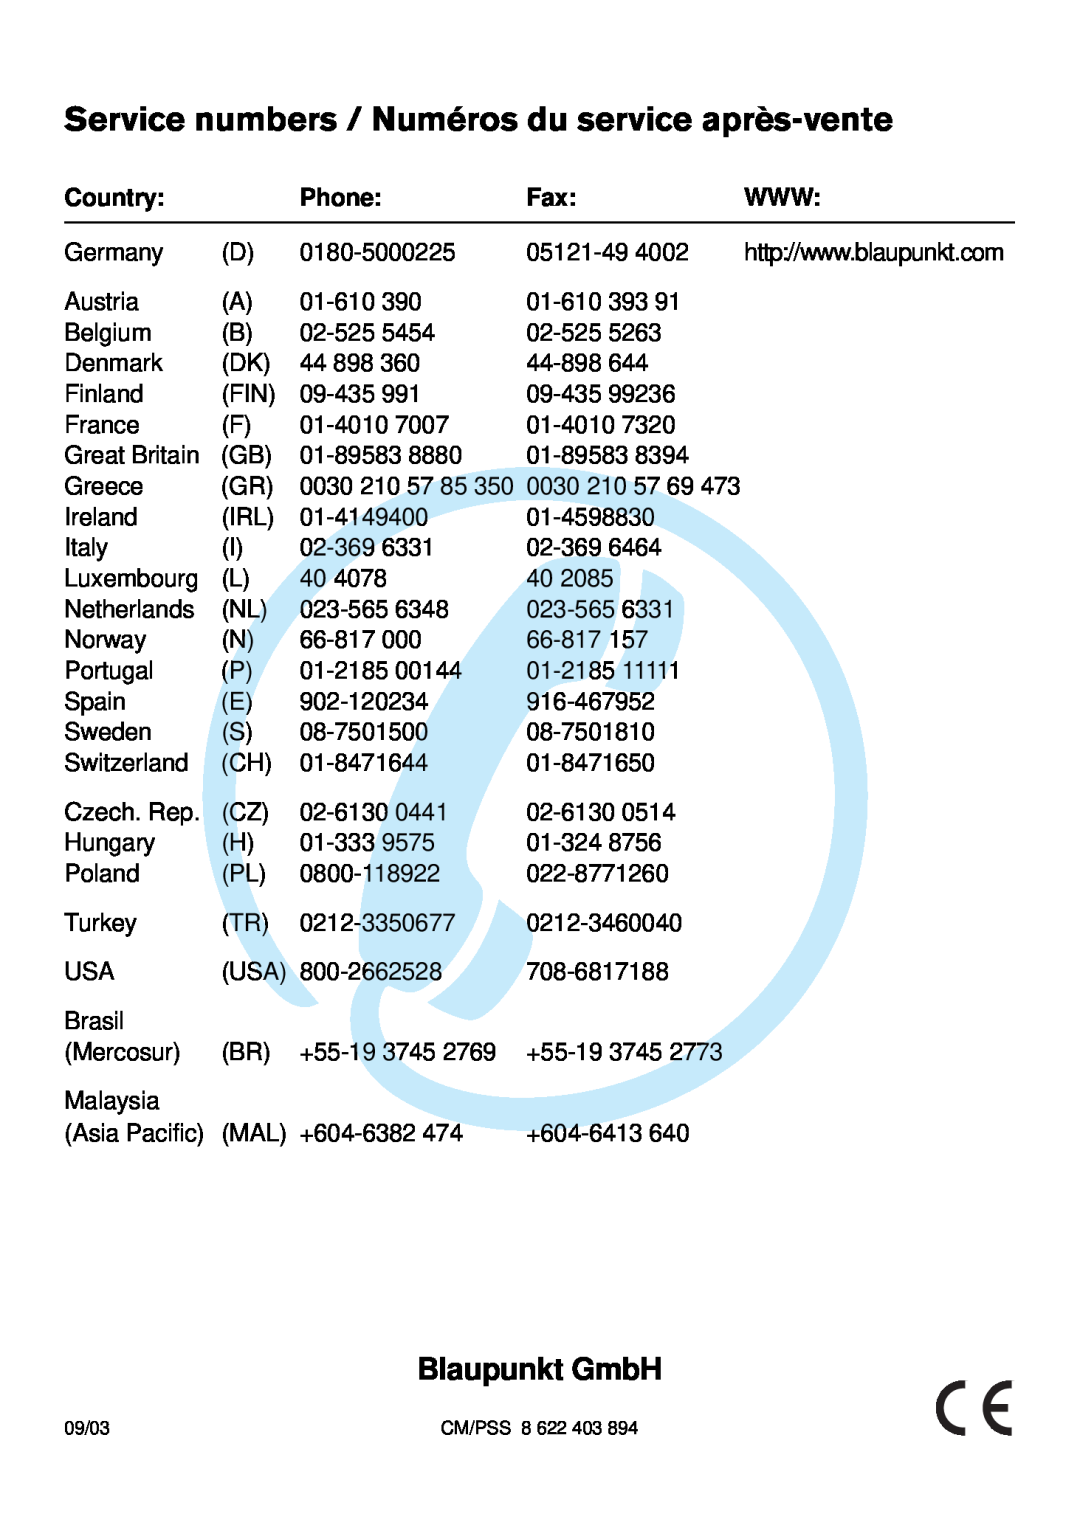 Blaupunkt 7 642 183 110, C33 Service numbers / Numéros du service après-vente, Blaupunkt GmbH, Country, Phone, 09/03 